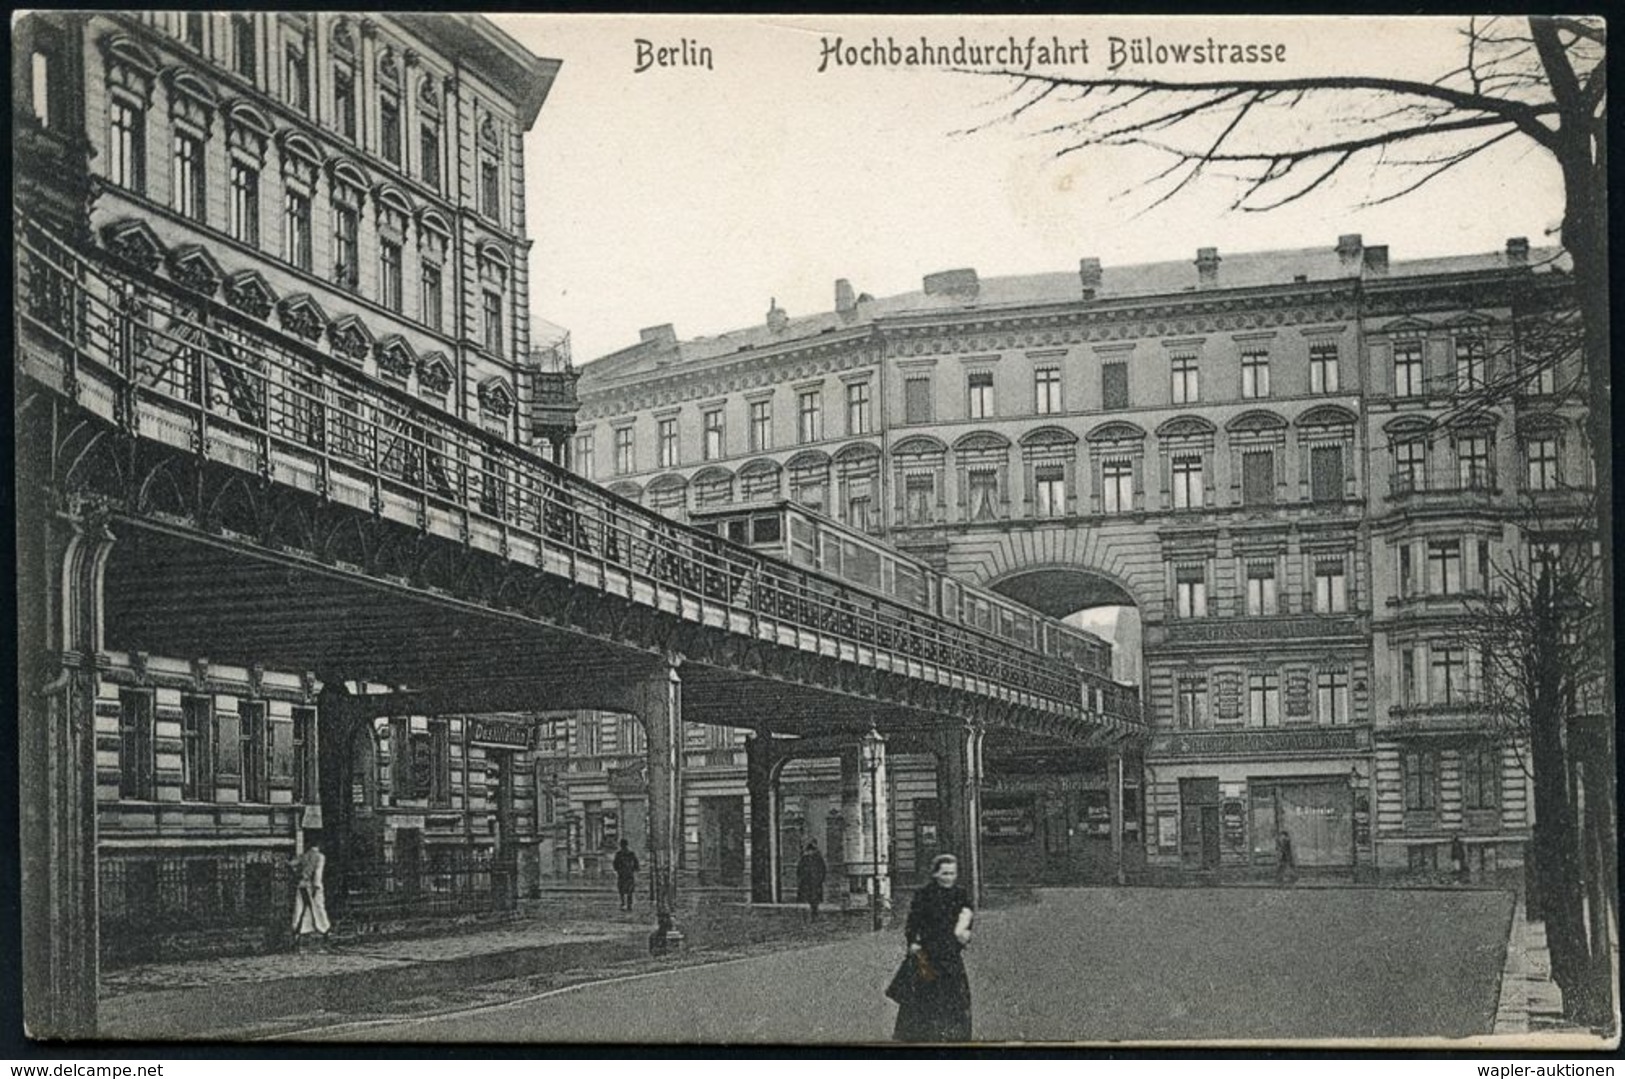 UNTERGRUNDBAHN /U-BAHN : Berlin-Schöneberg 1910/12 U-Bahn-Durchfahrt Durch Das Wohnhaus Bülowstr.70, 5 Verschiedene S/w. - Eisenbahnen